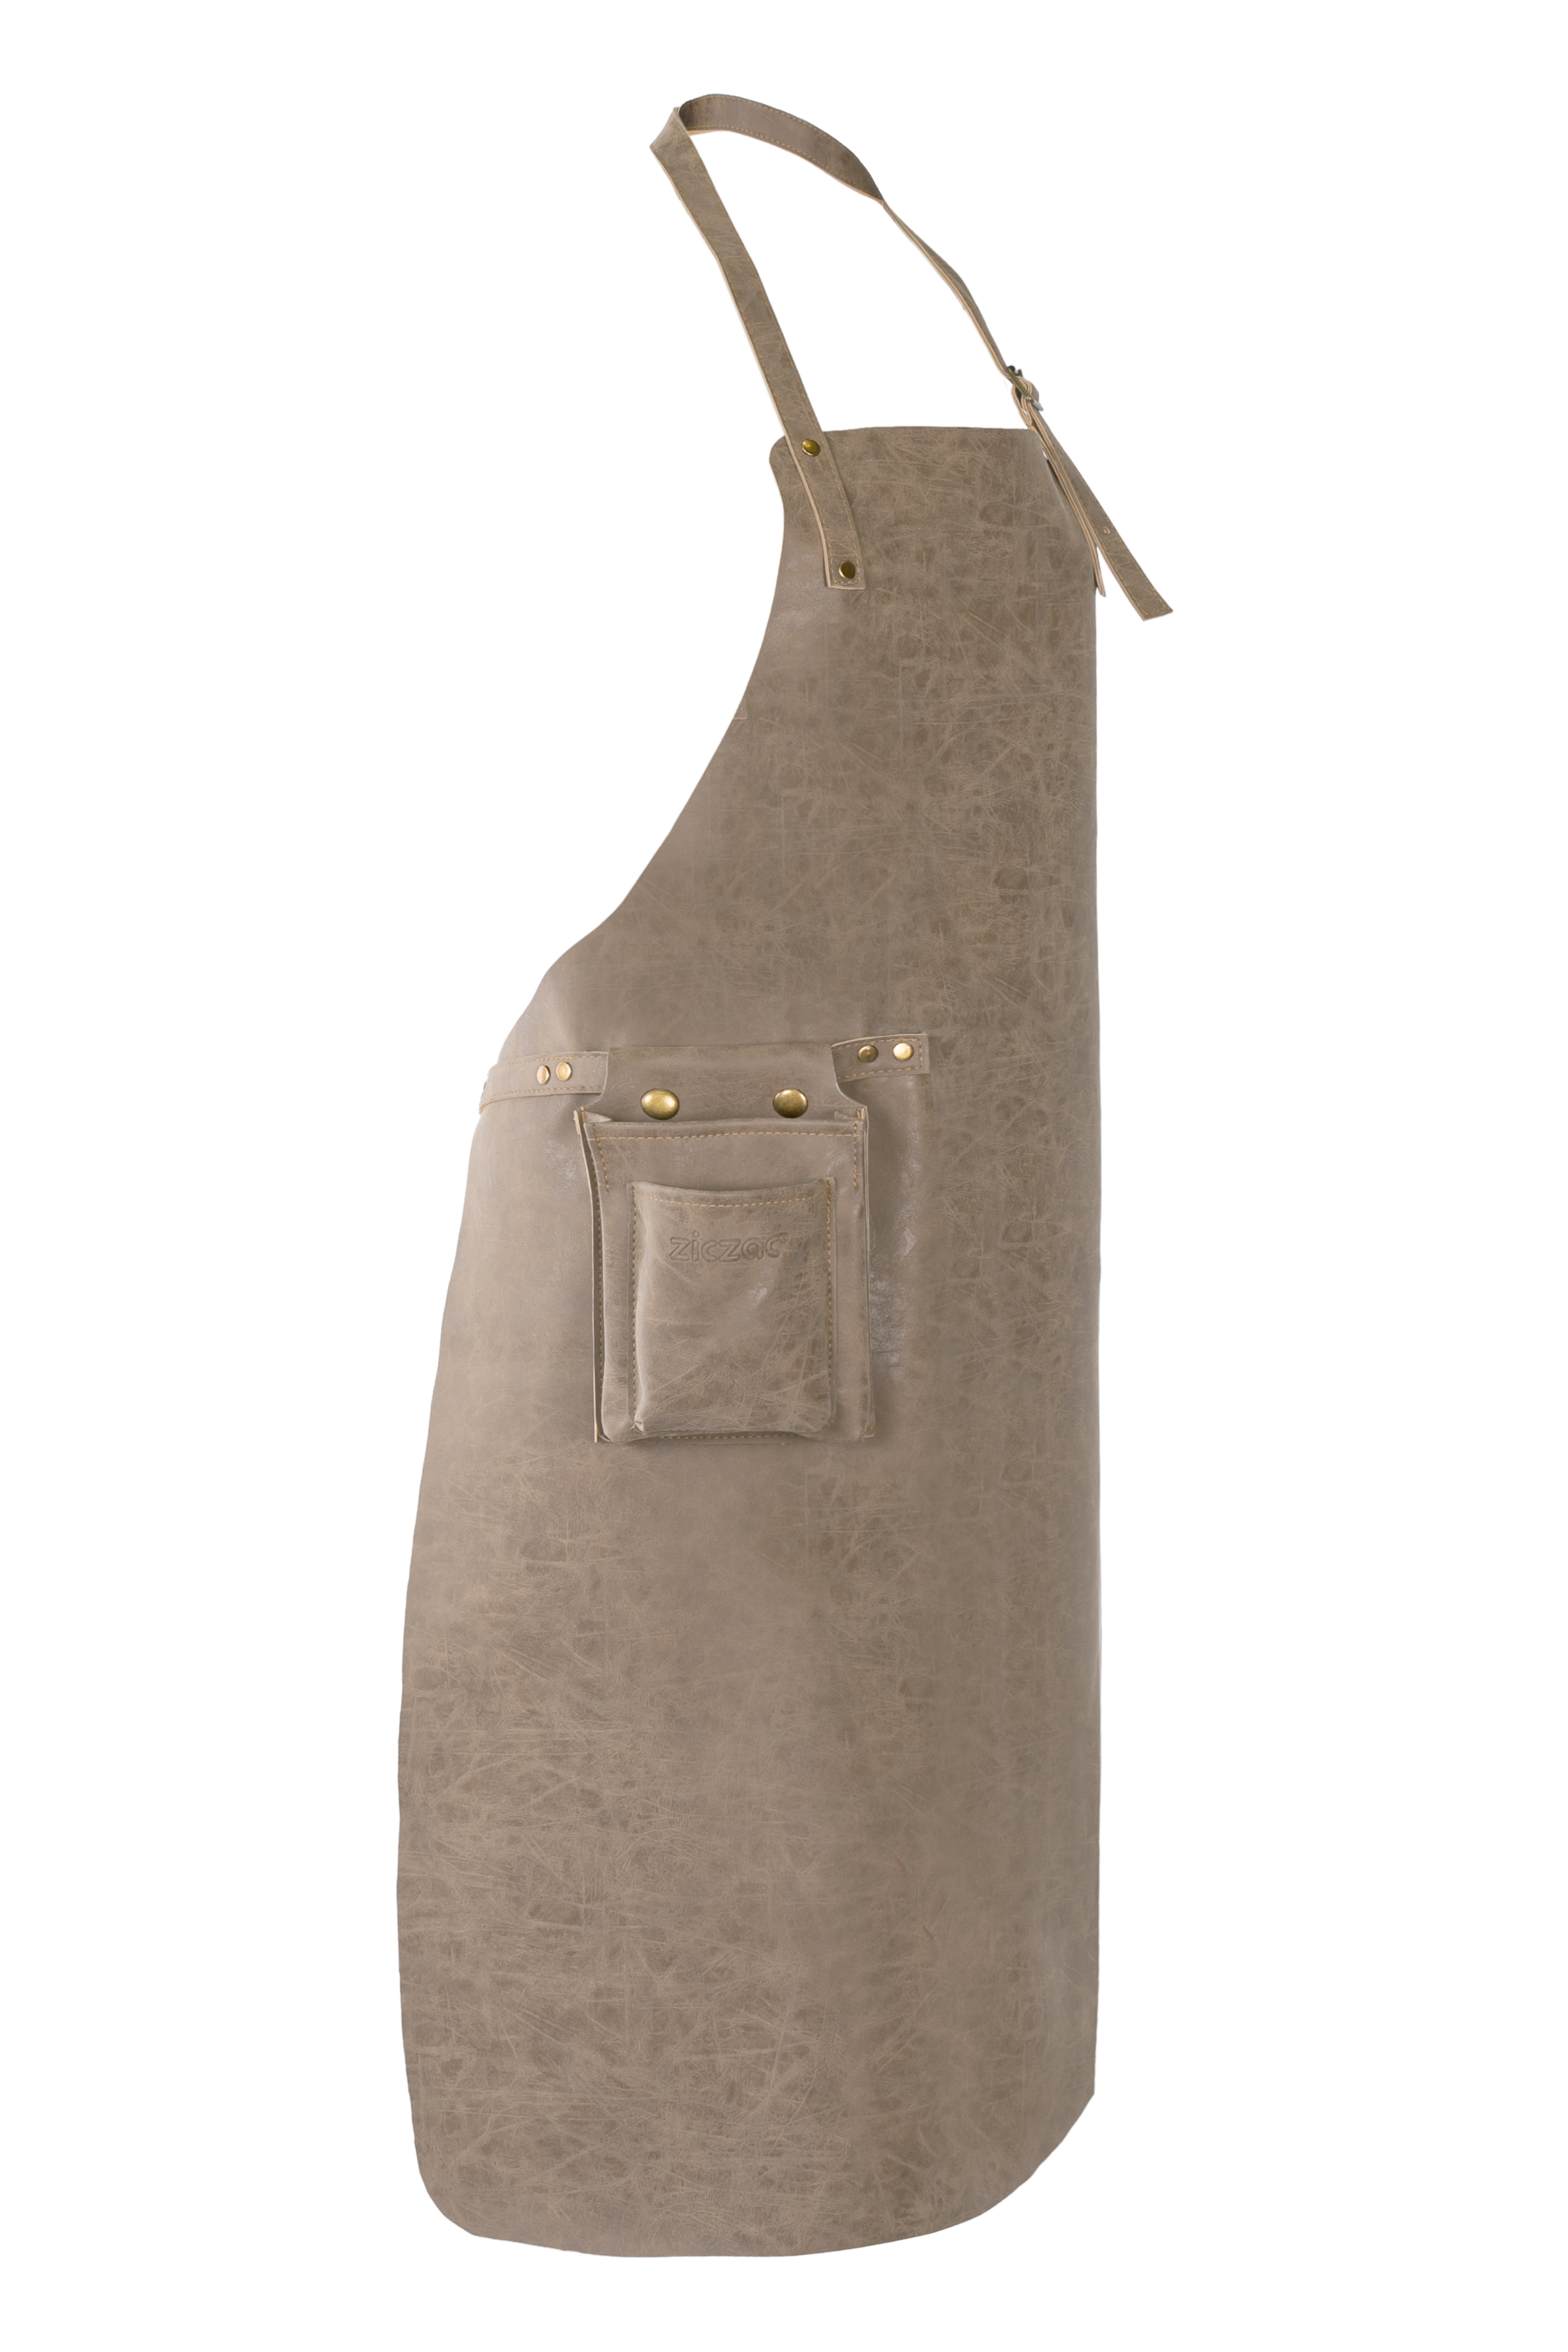 Apron TRUMAN (Towel loop - no pocket - opt. Accessory bag), 70x90 cm, taupe